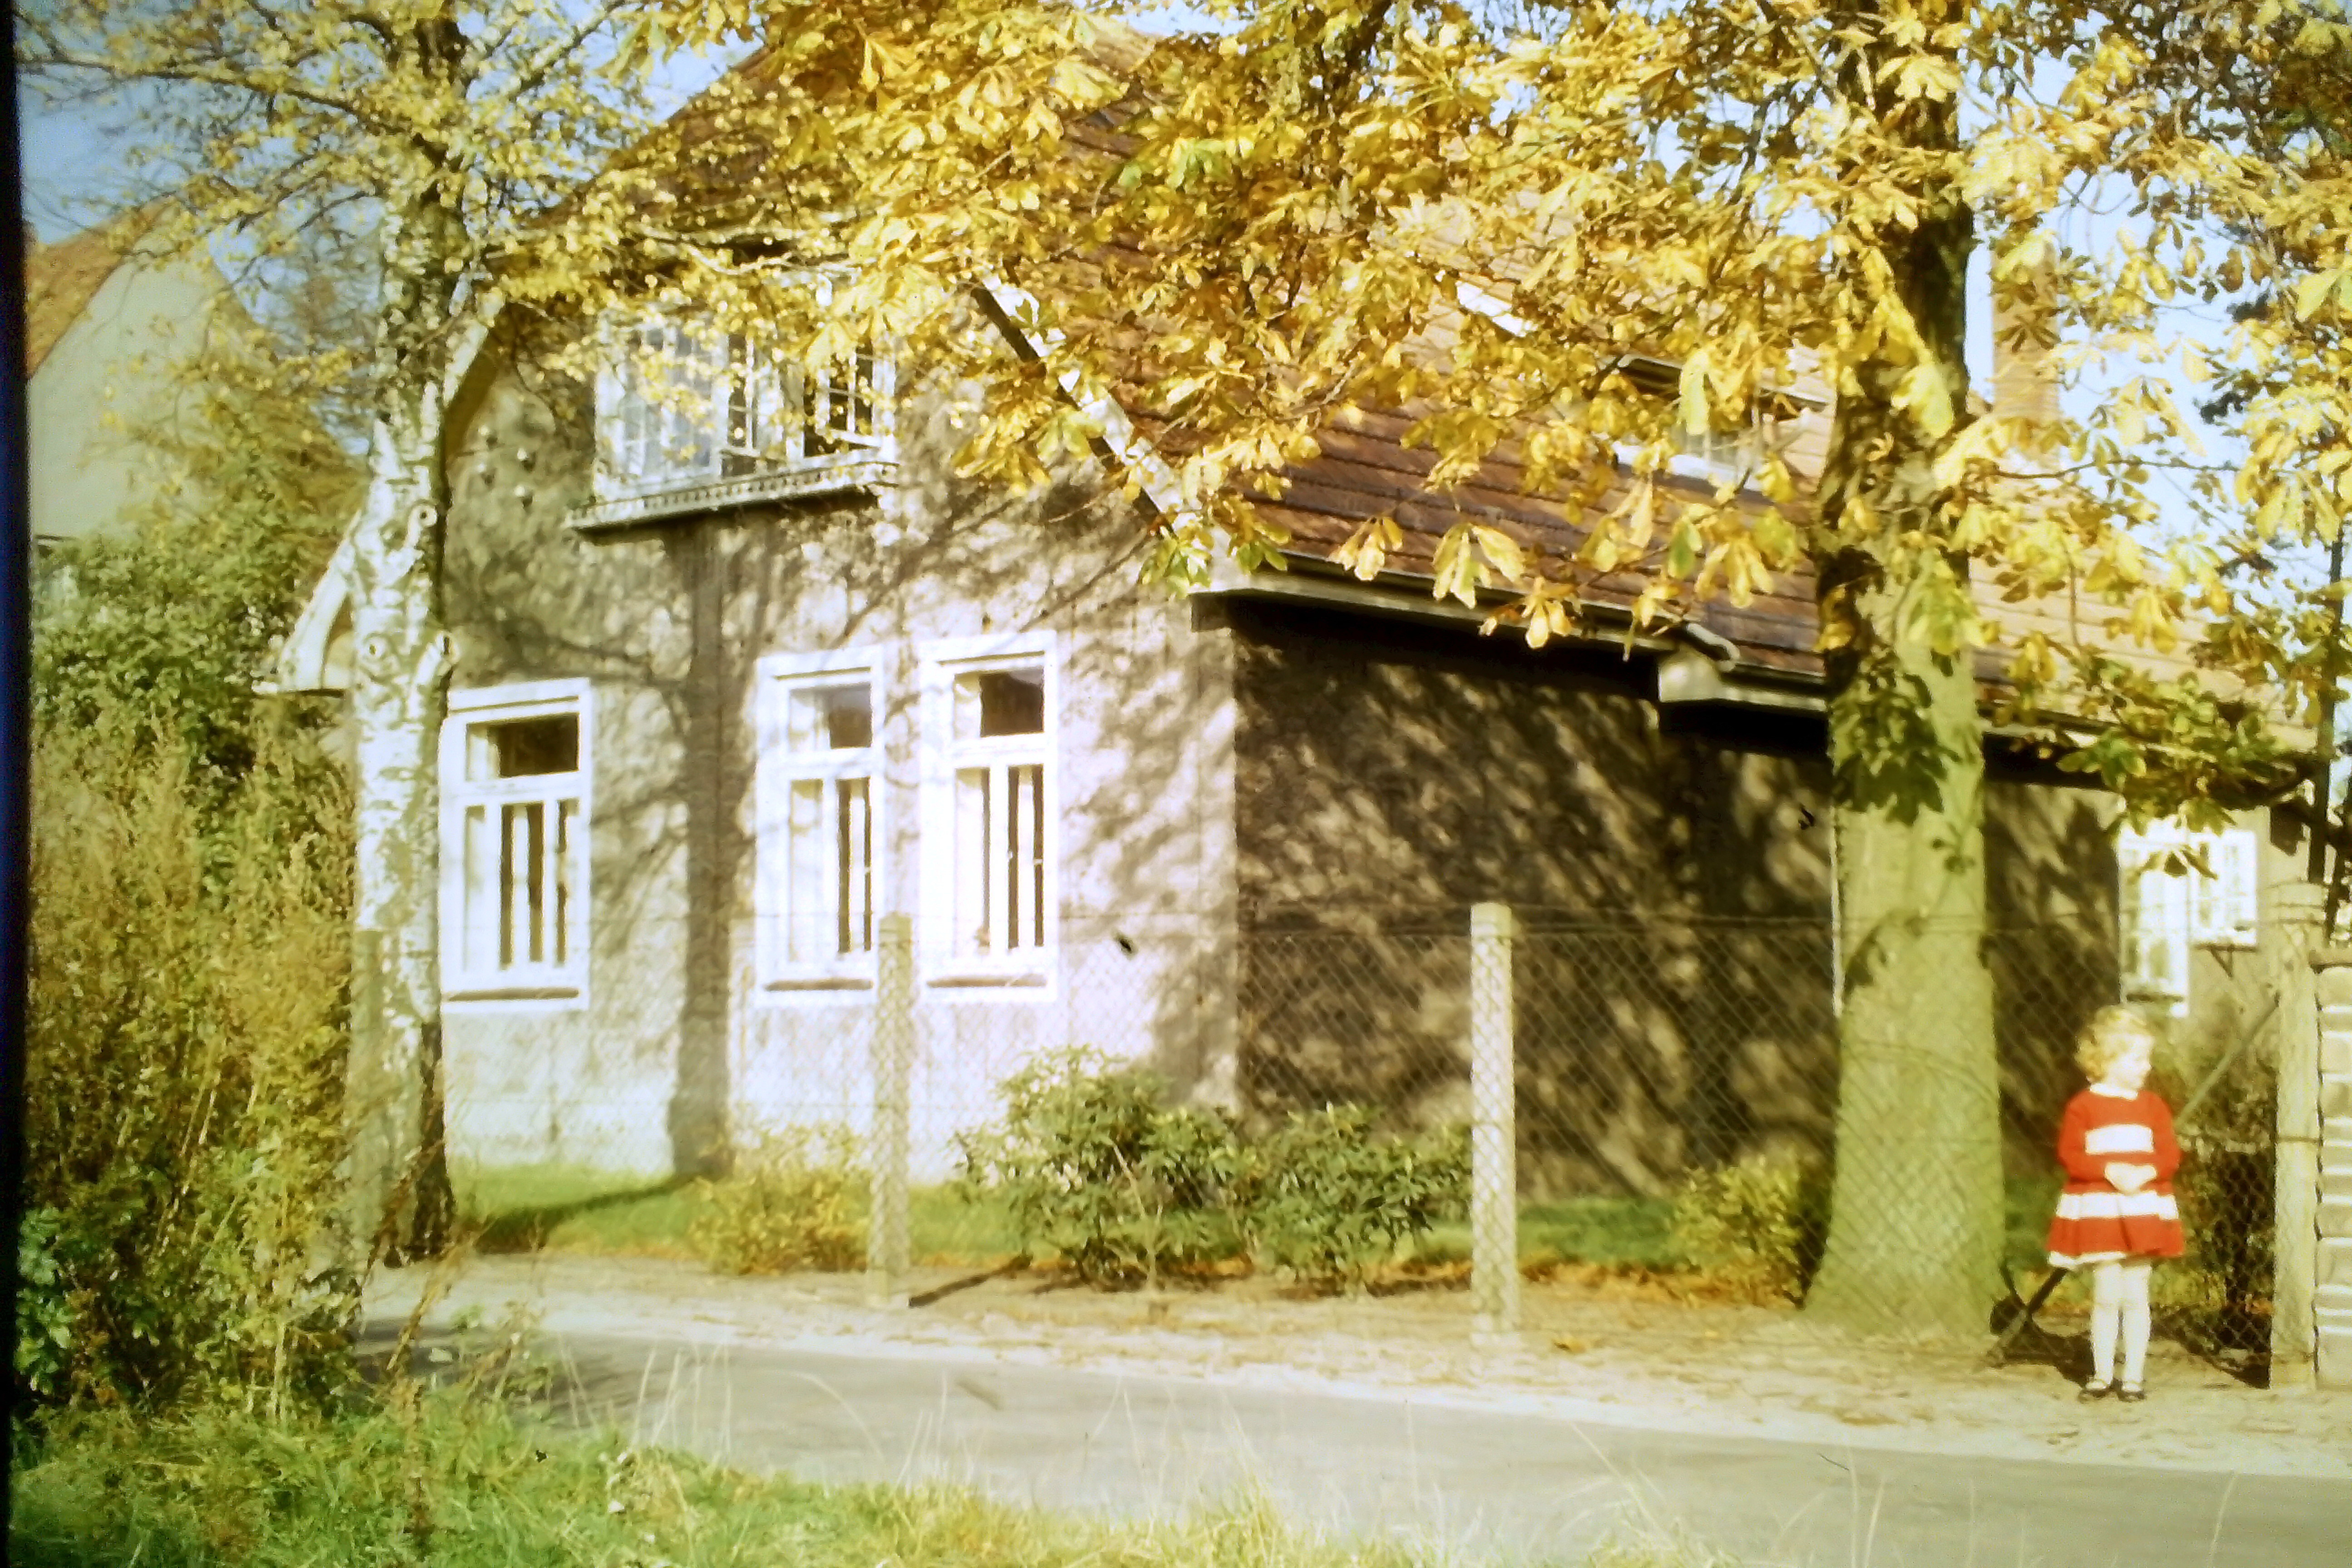 Pastorenhaus von der Jugendheimseite gesehen / ca. 1950 / mit Traute Lappe / Foto: R. Lappe